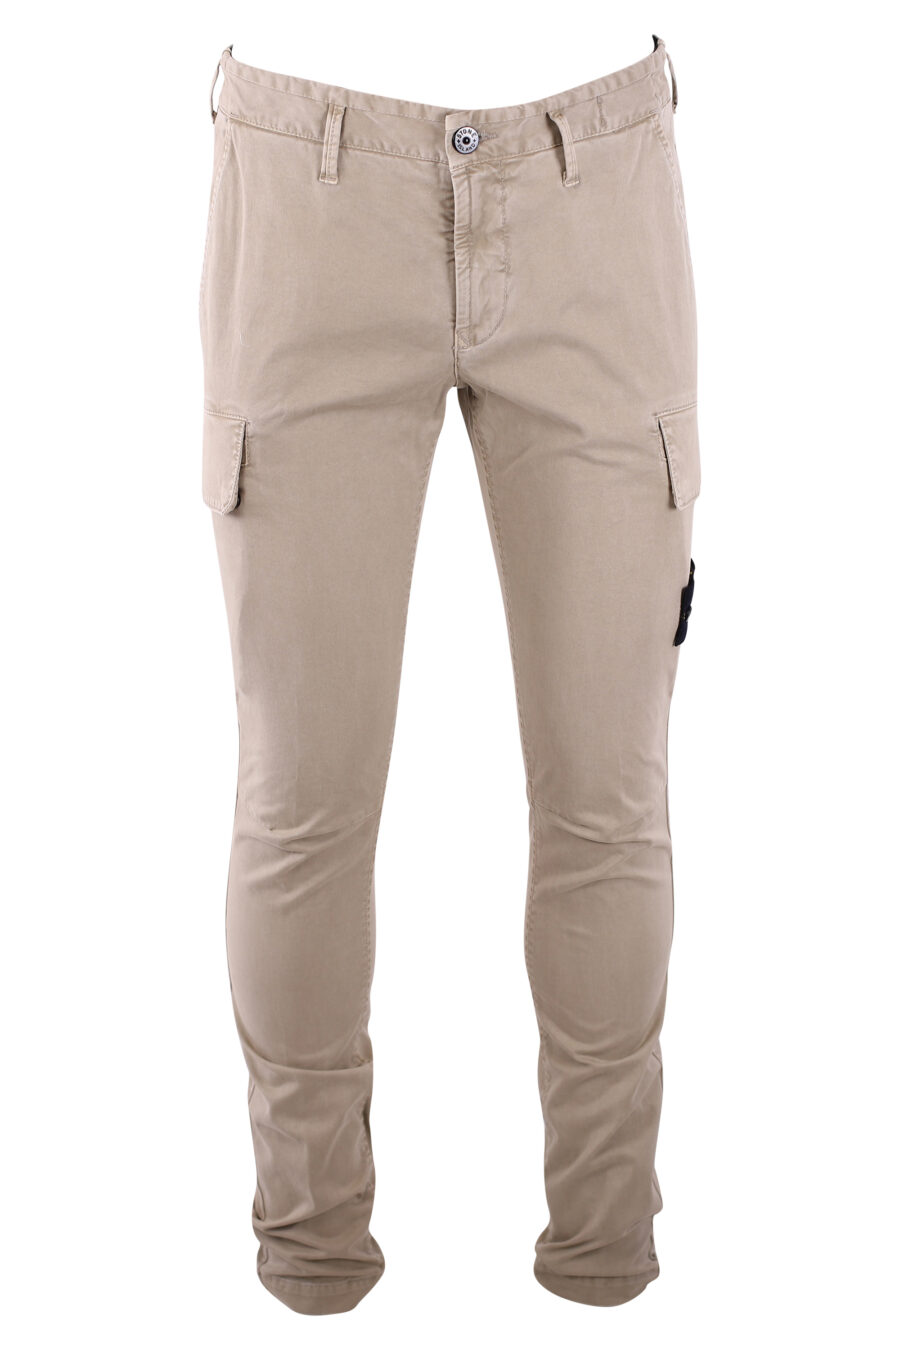 Pantalon beige avec poches latérales et écusson - IMG 3237